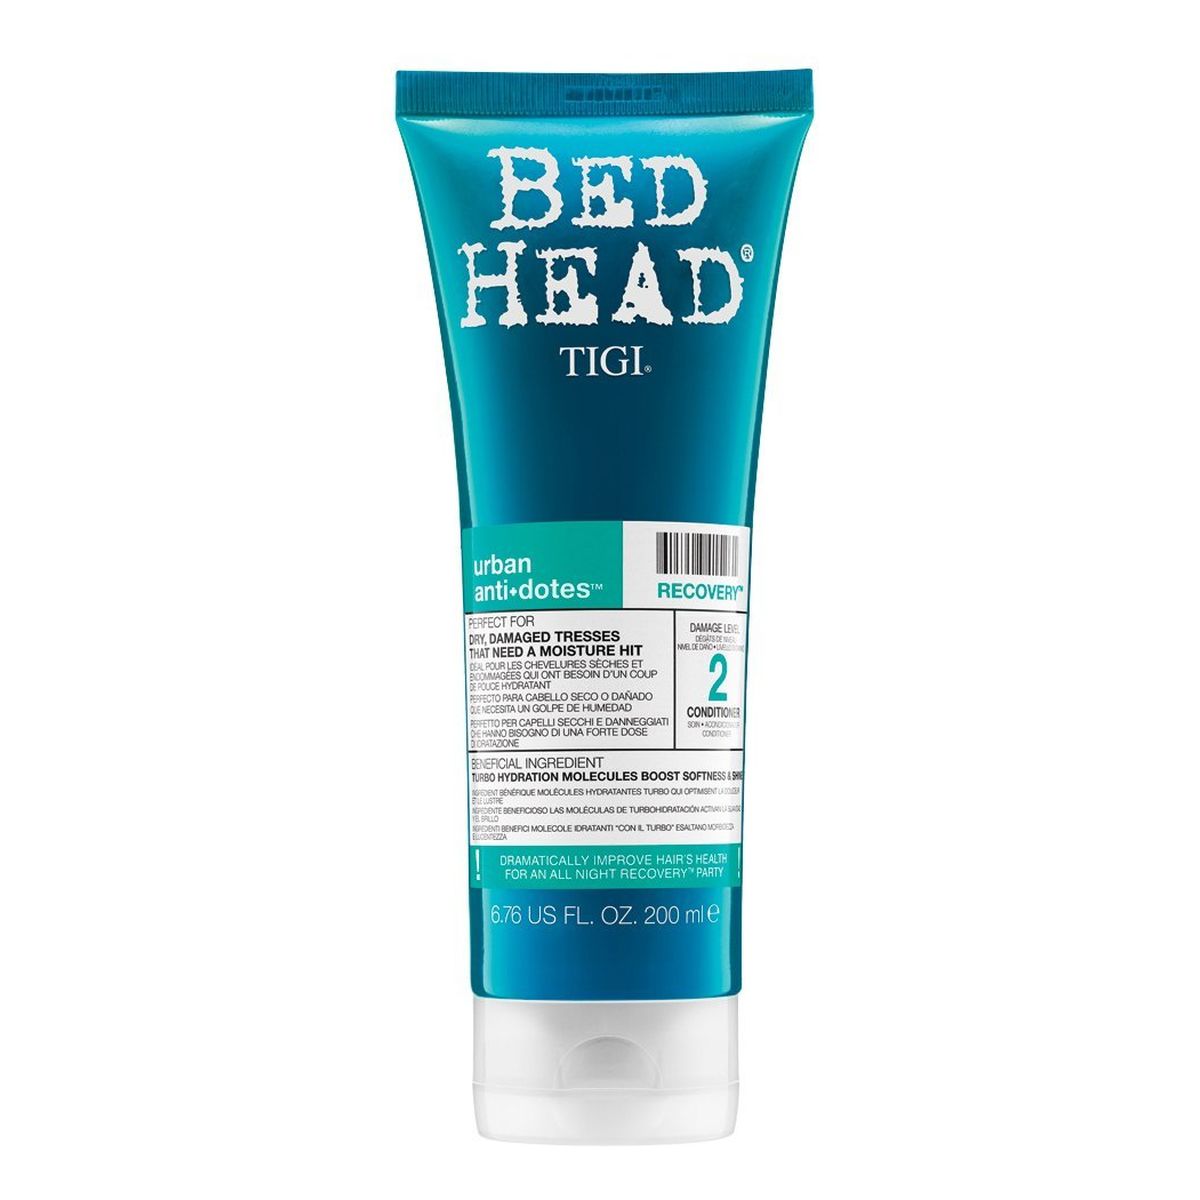 Tigi BED HEAD RECOVERY Odżywka regenerująca do włosów wysuszonych 200ml